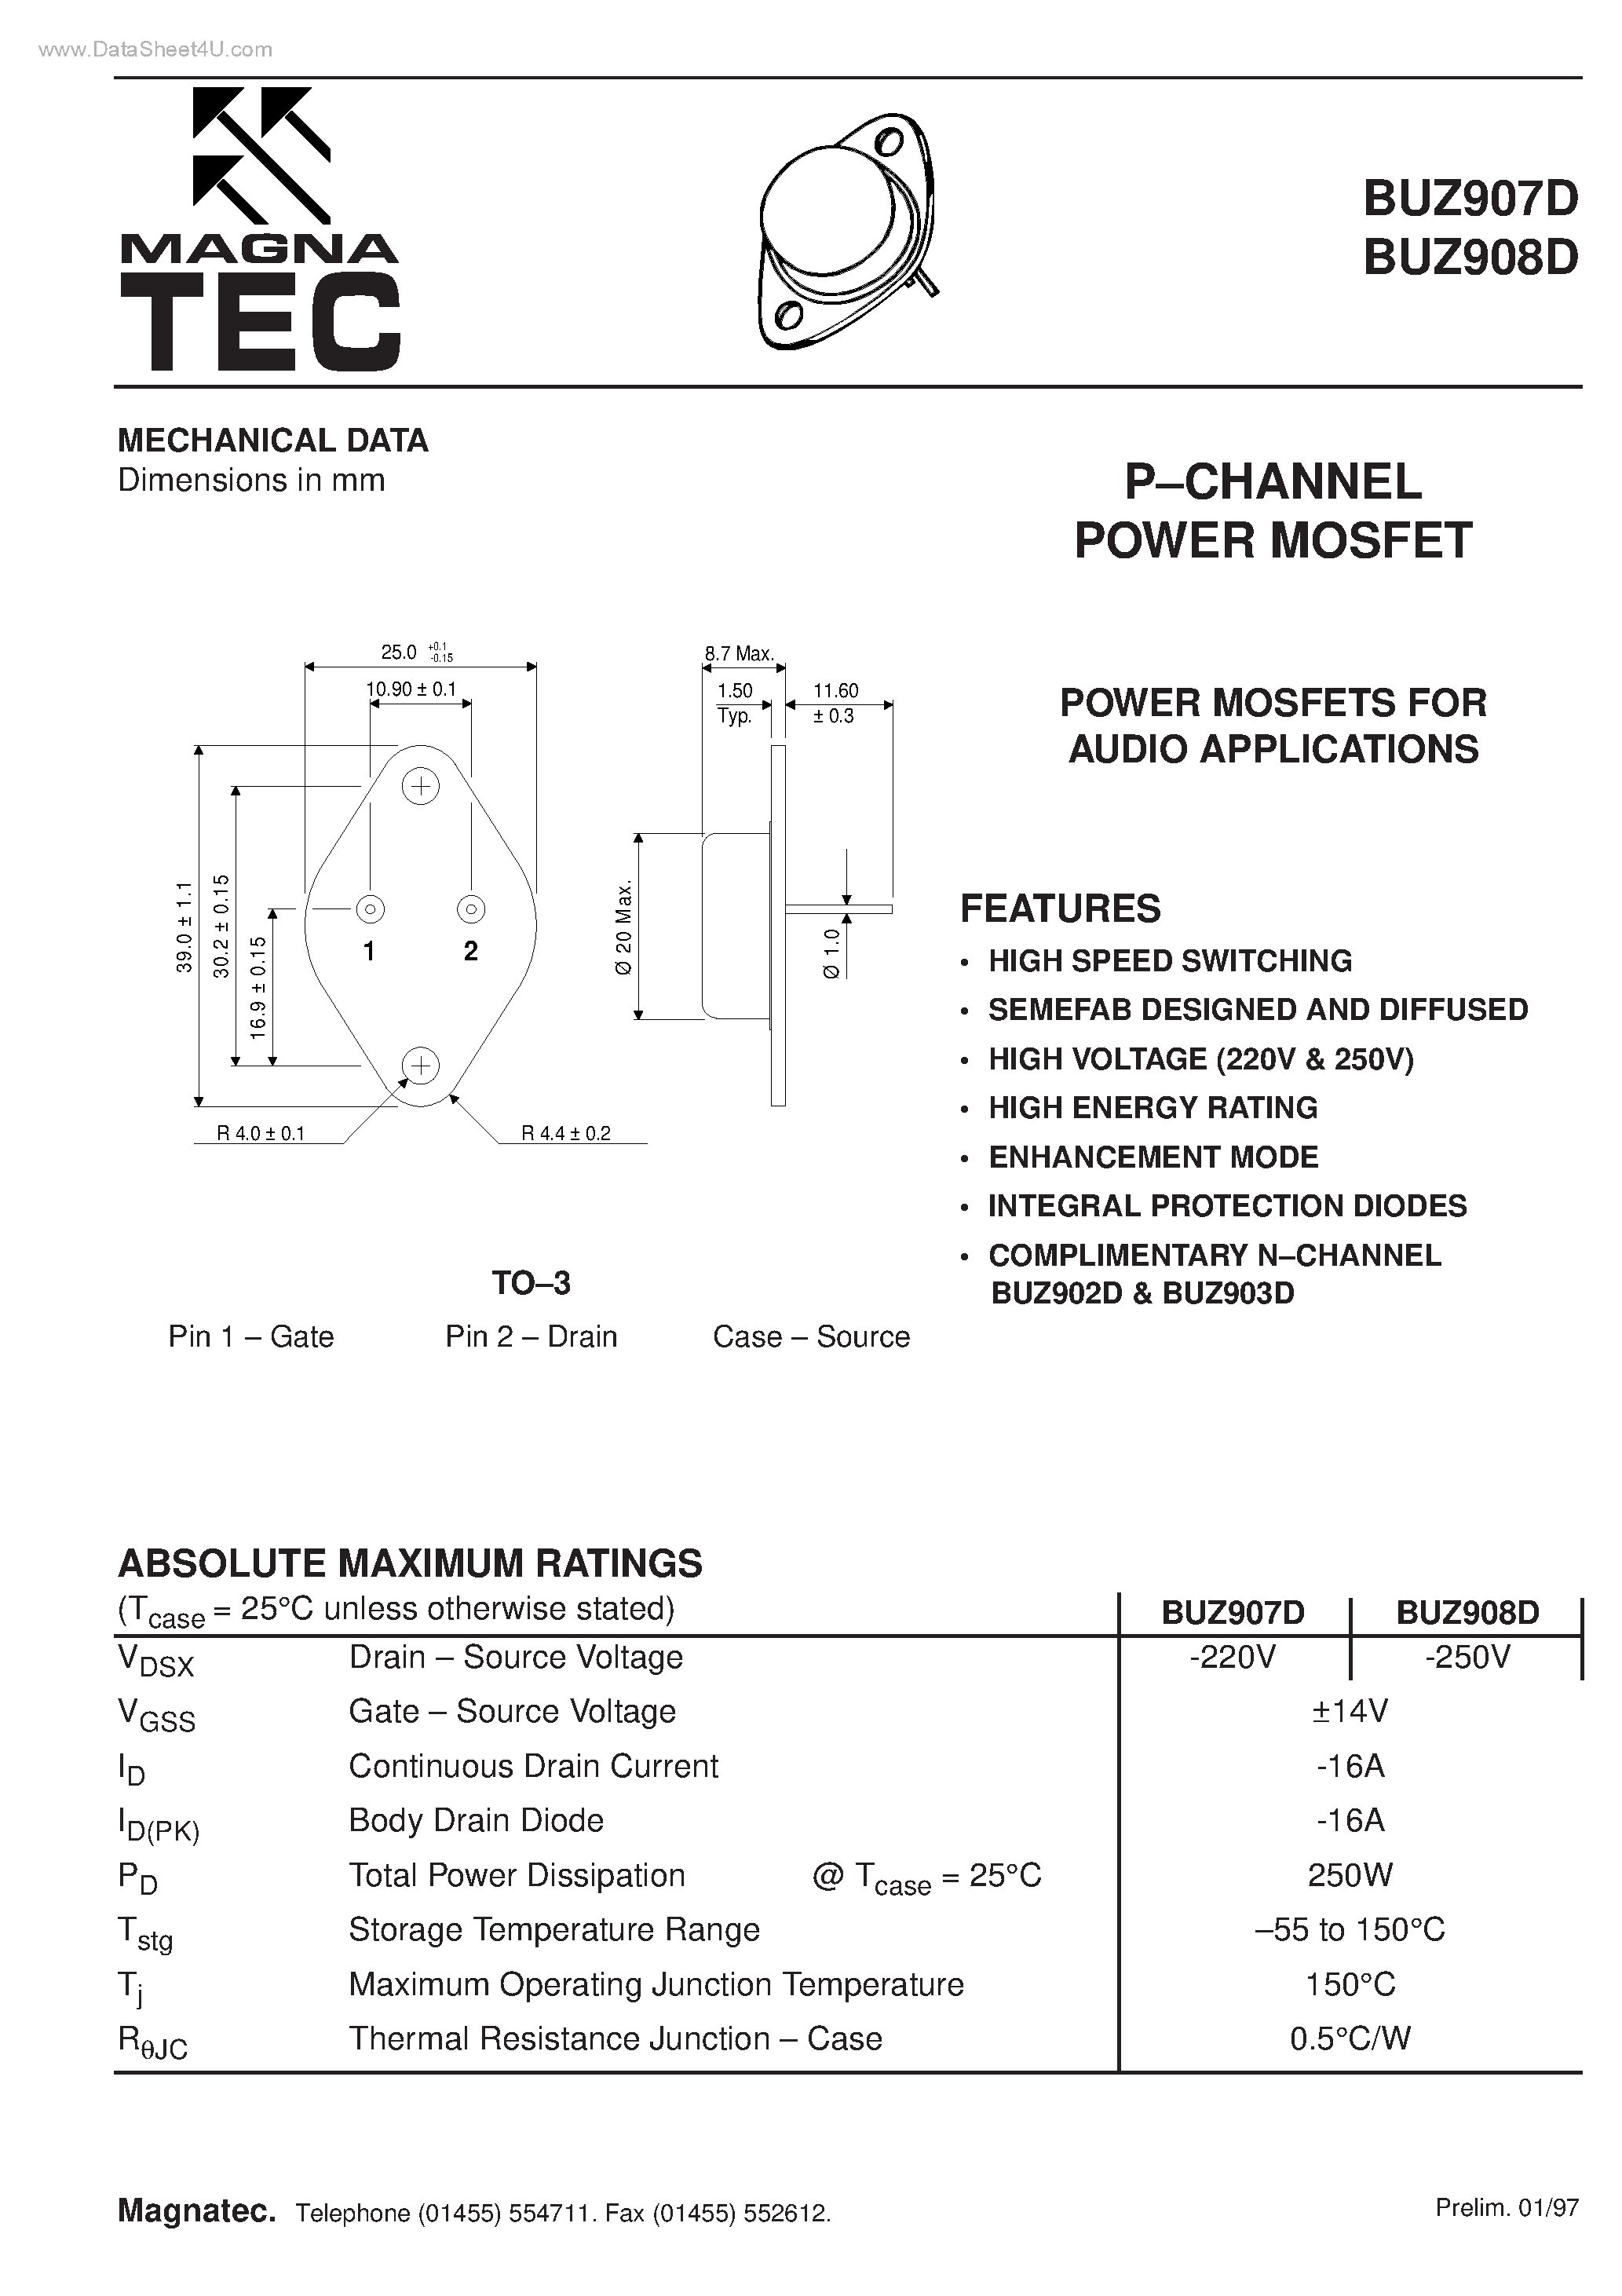 Даташит BUZ907D - (BUZ907D / BUZ908D) P-CHANNEL POWER MOSFET страница 1